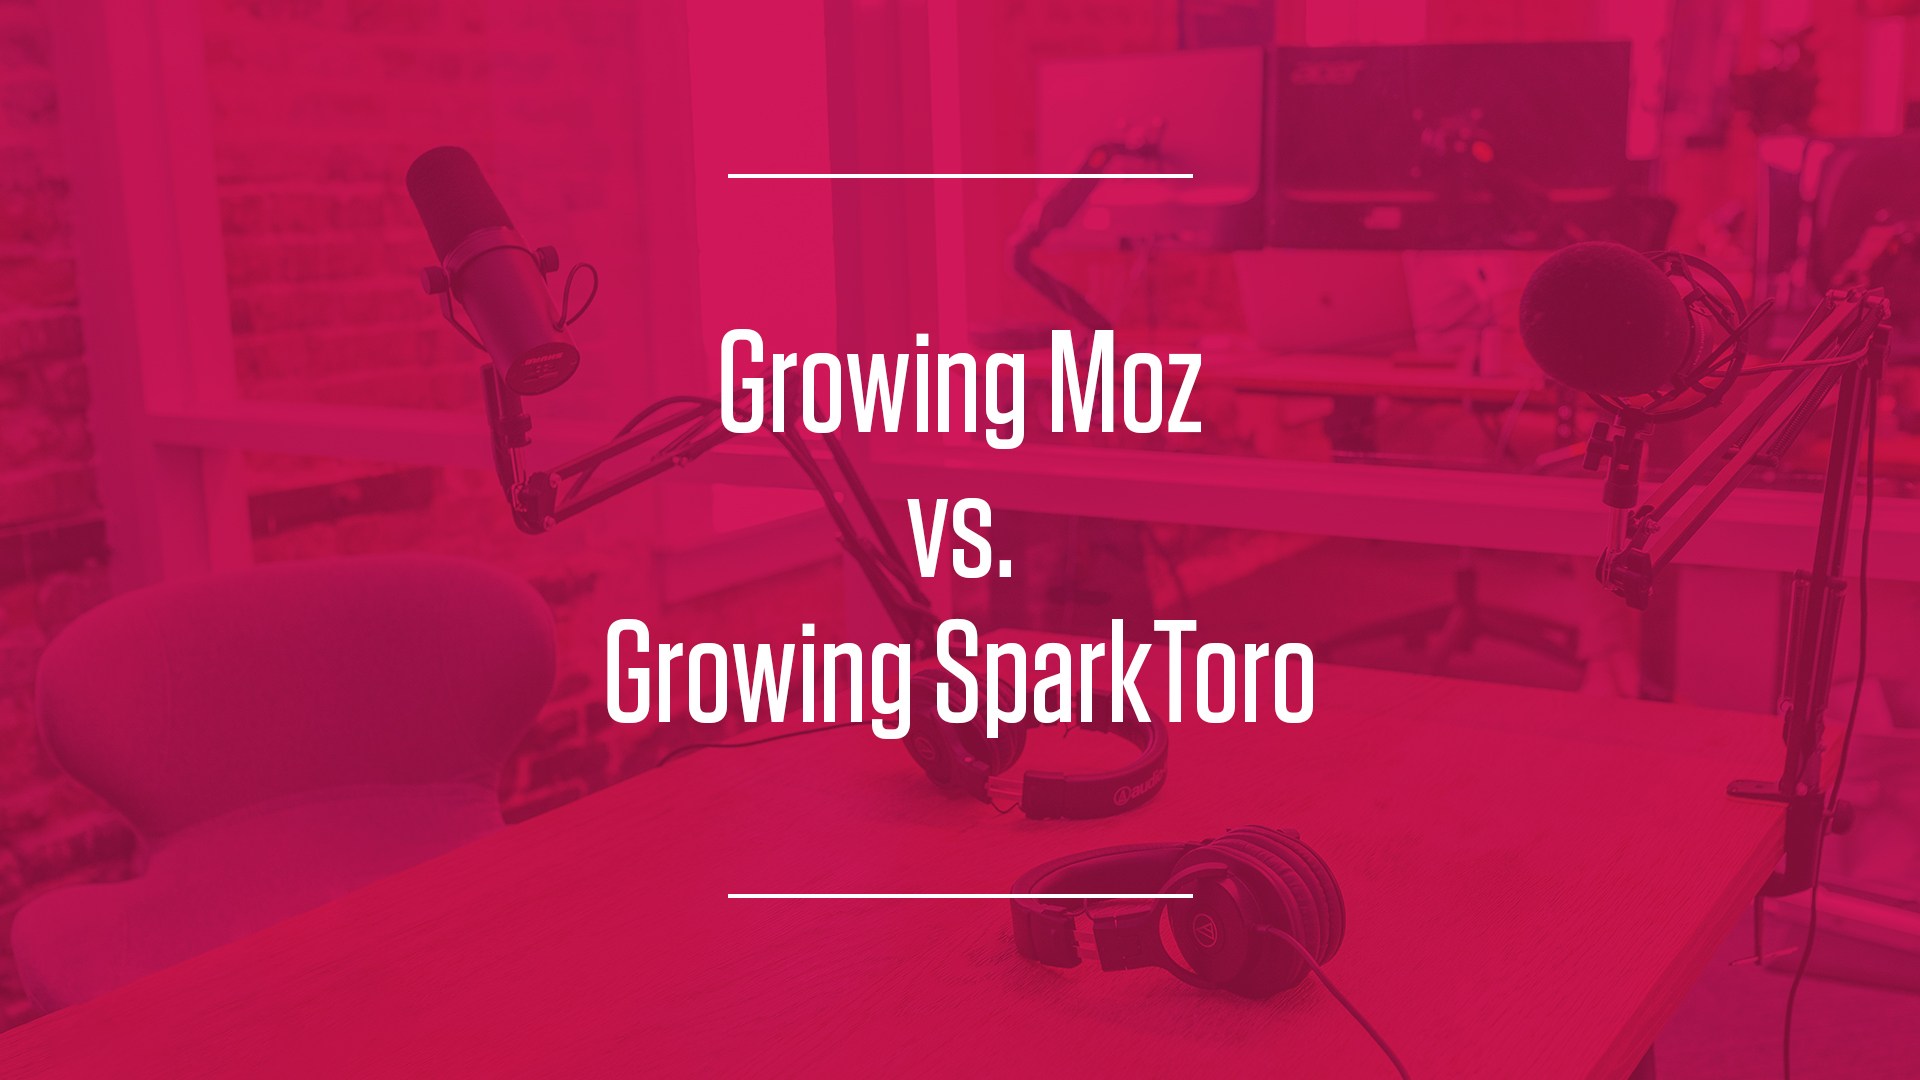 Growing Moz vs. Growing SparkToro